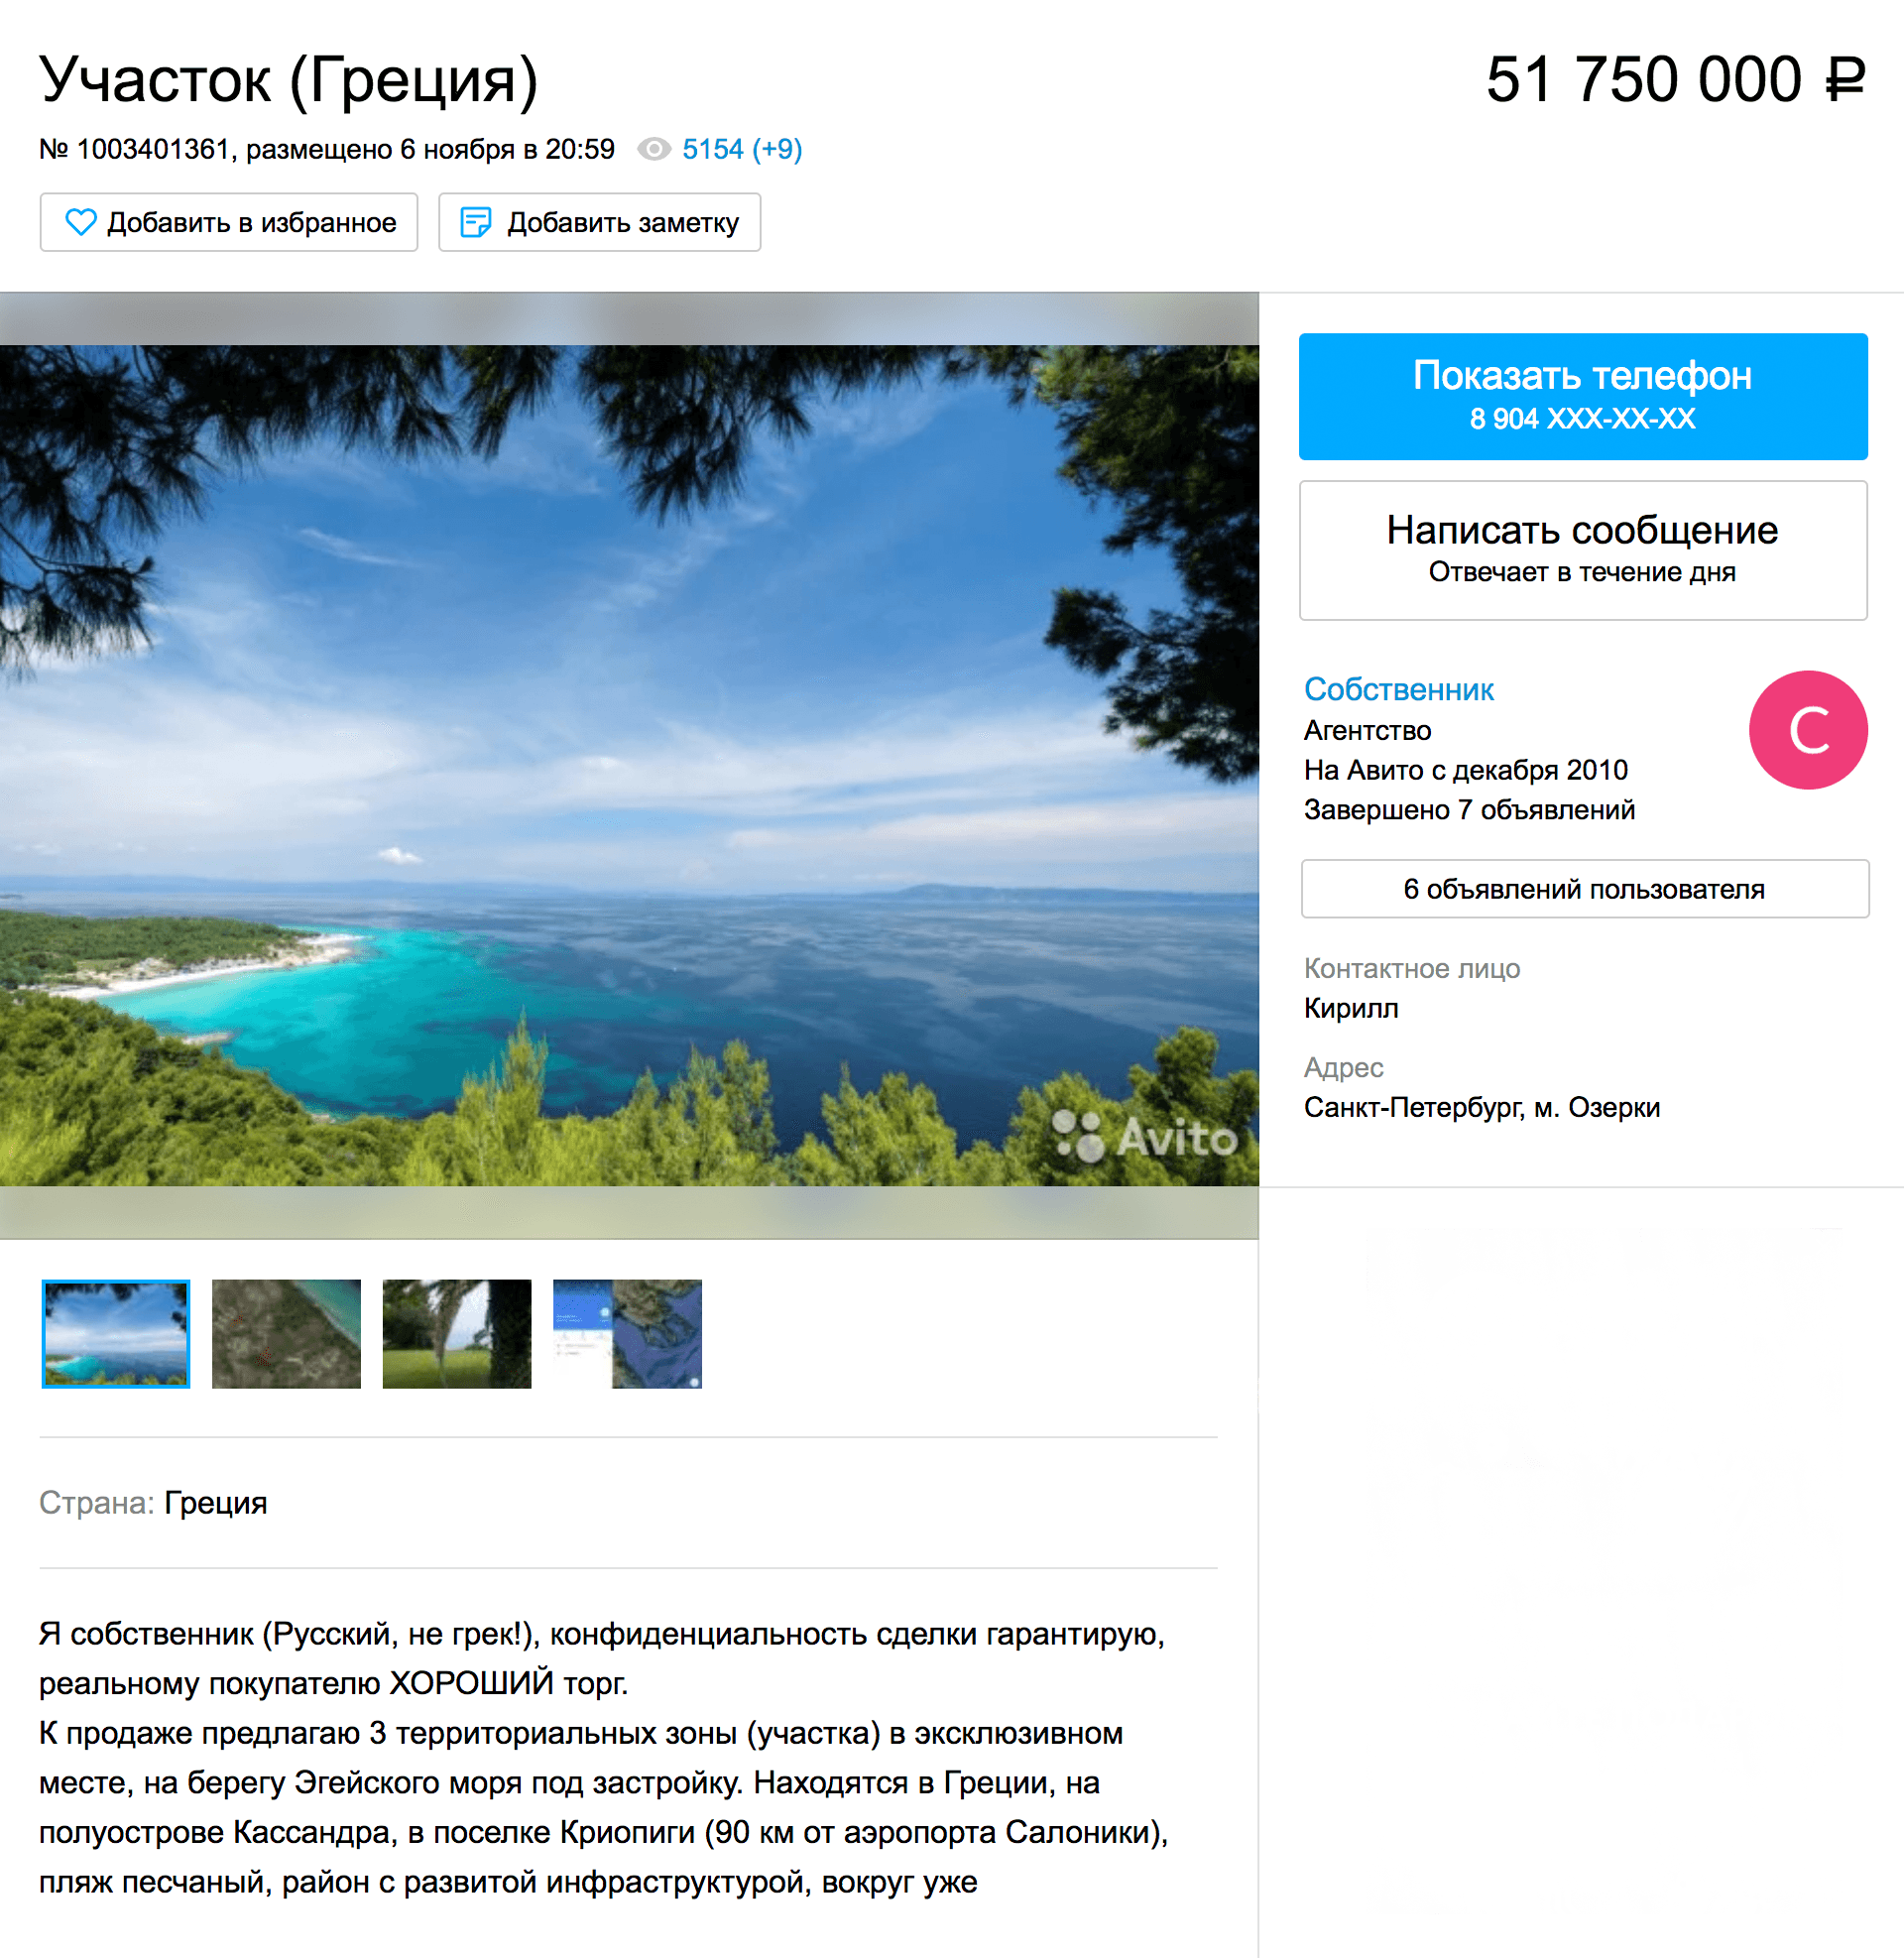 Участок с видом, как из рекламы «Баунти», на берегу Эгейского моря — 51,8 млн рублей. Объявление на «Авито»